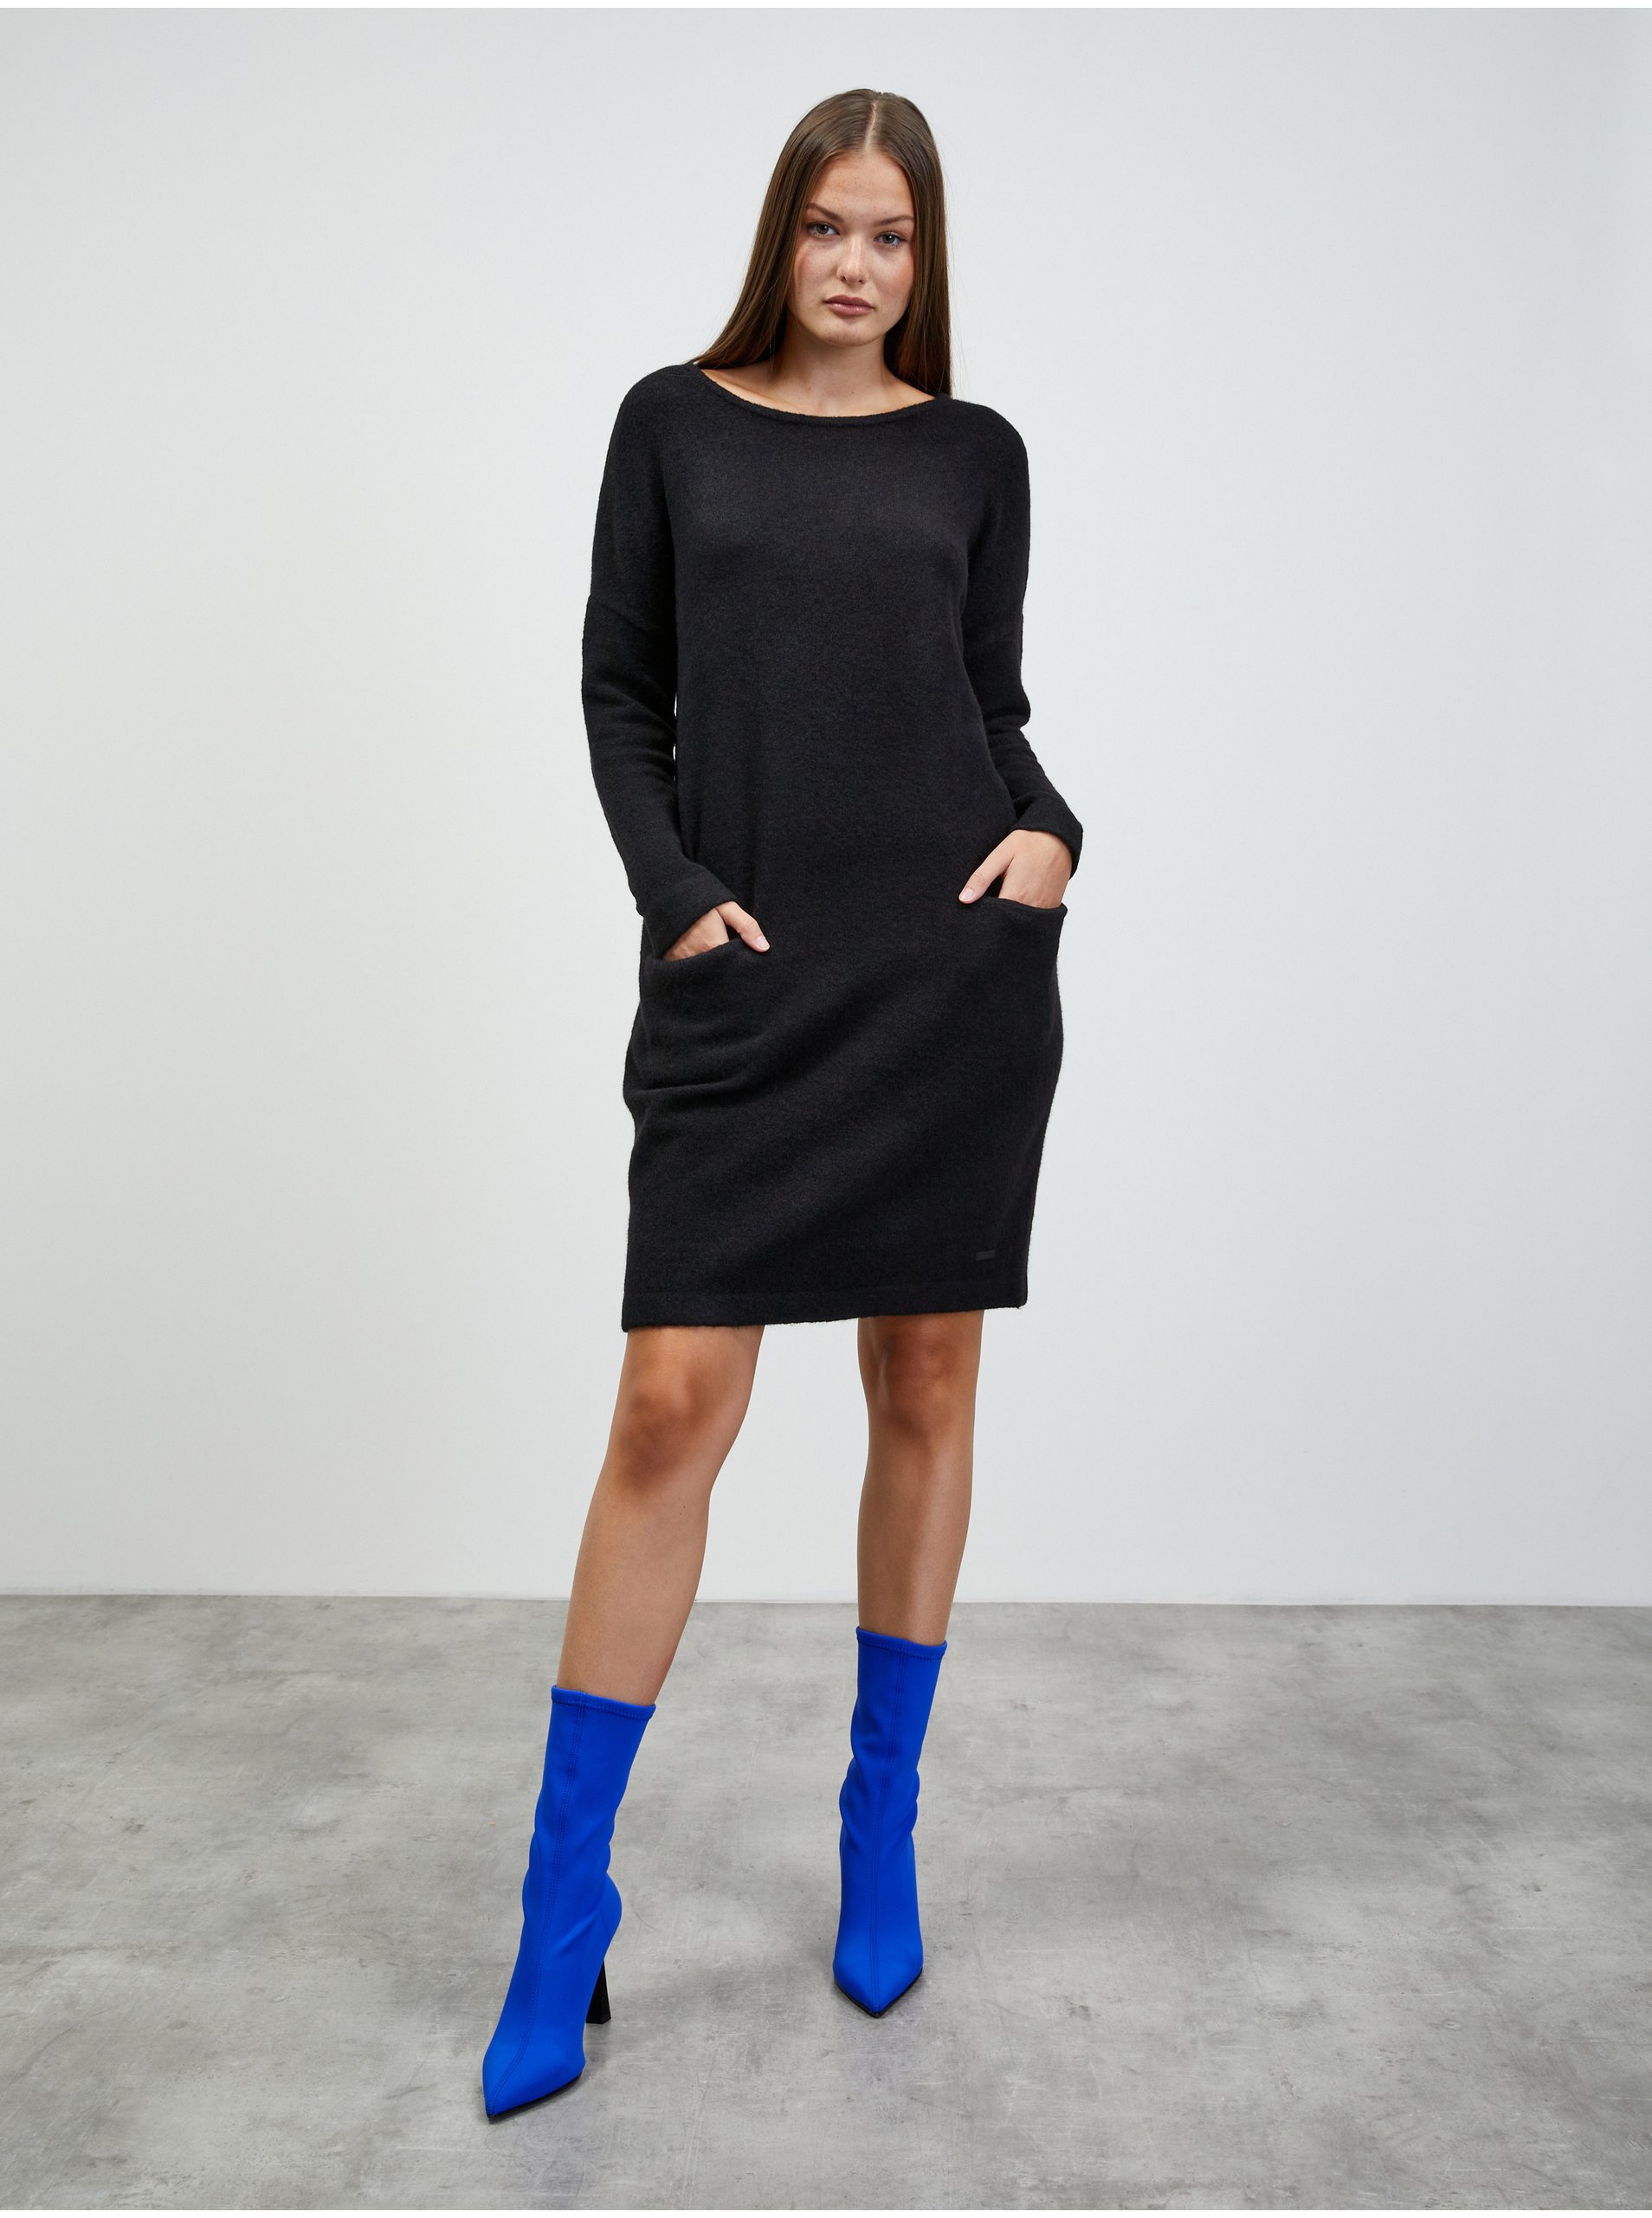 E-shop Černé svetrové šaty s příměsí vlny ZOOT.lab Dania